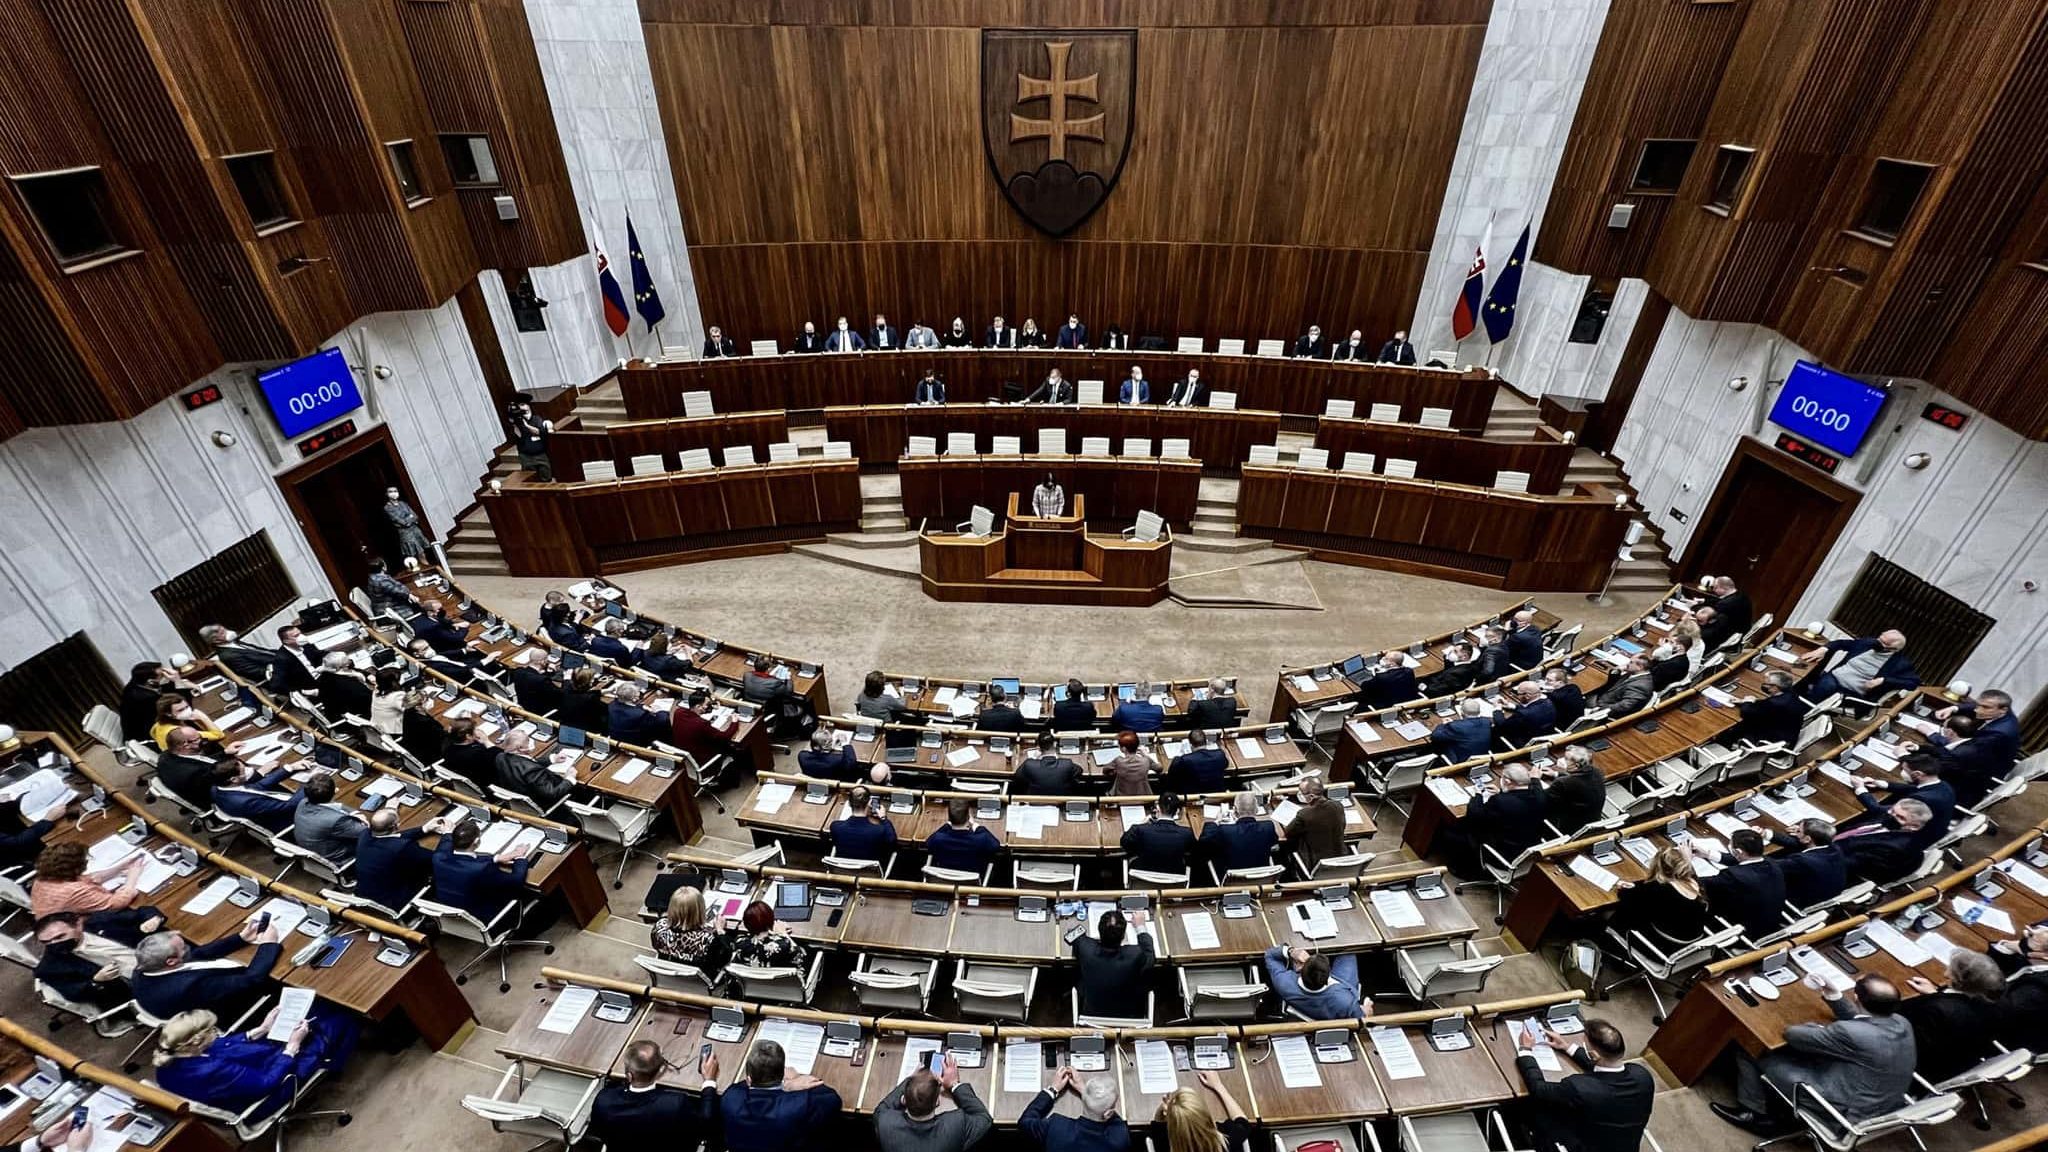 parlament slovenska republika